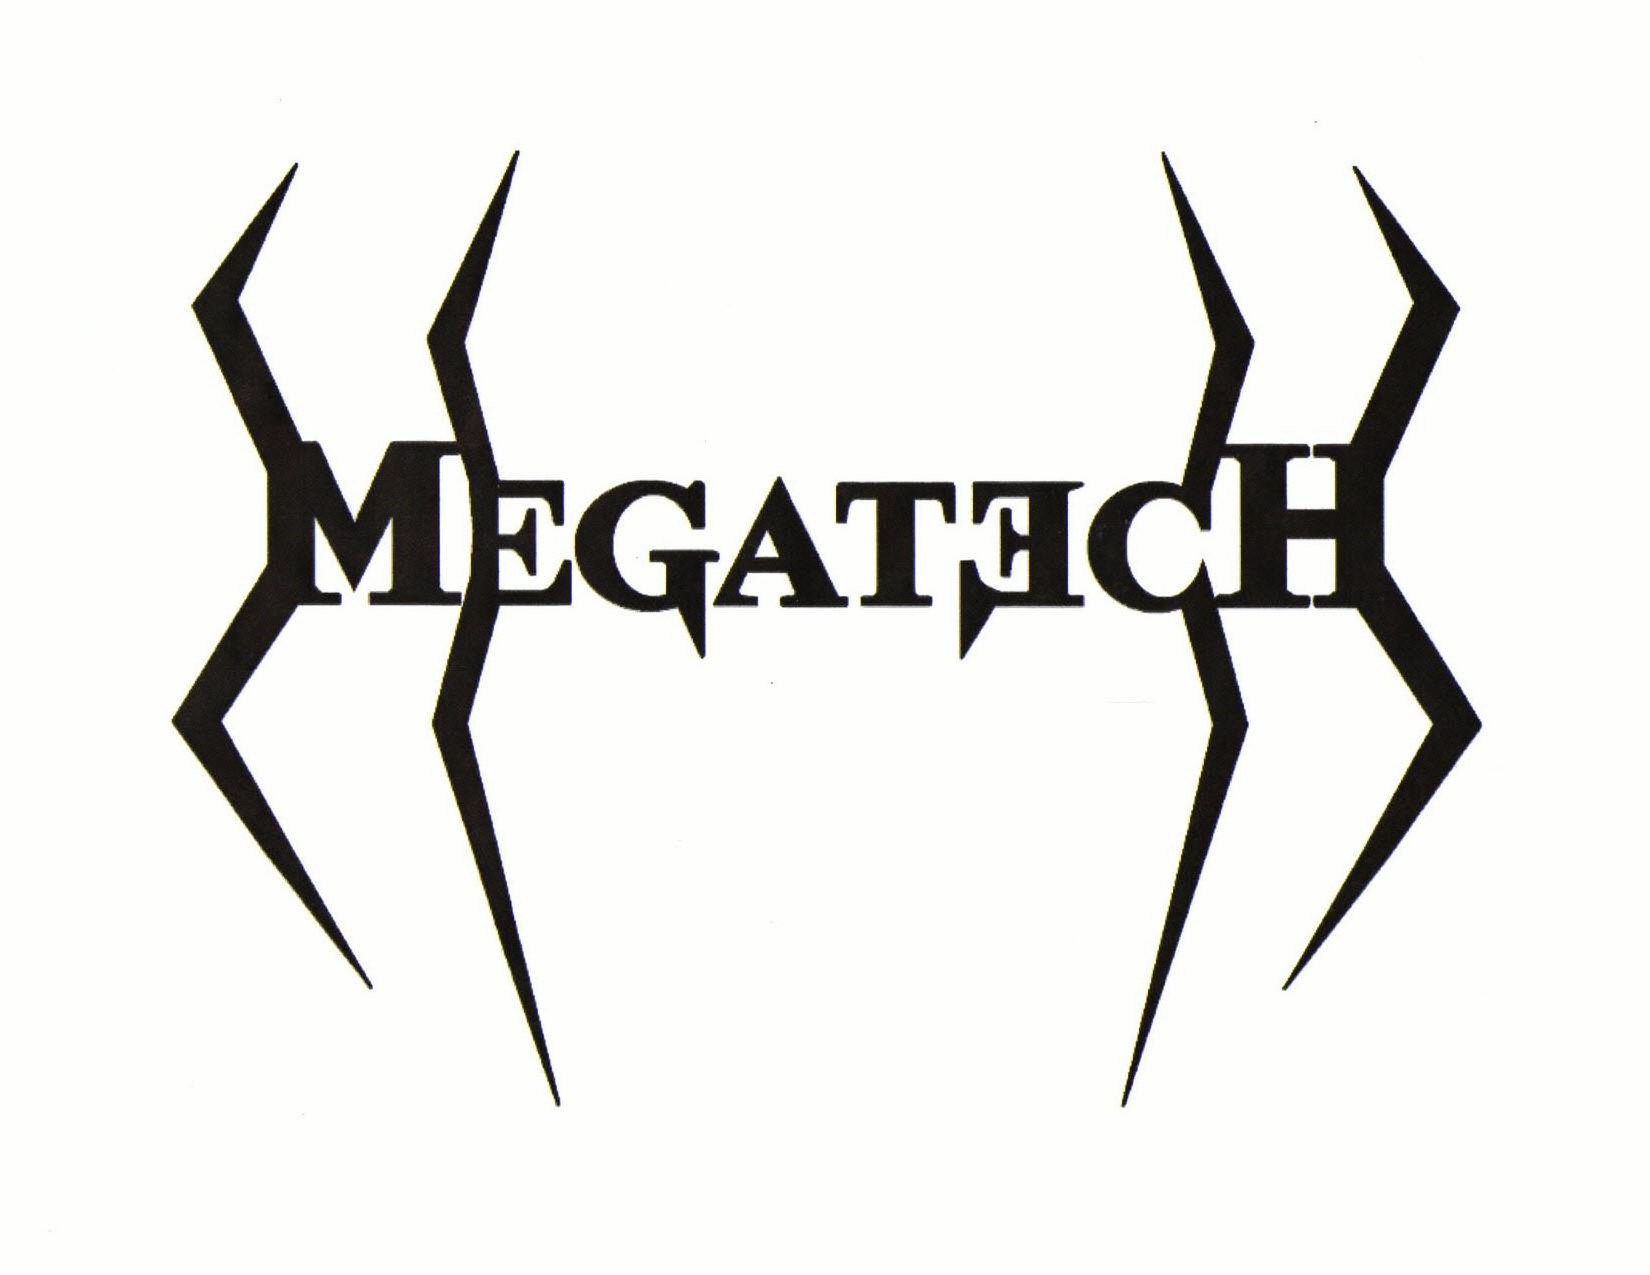 MEGATECH